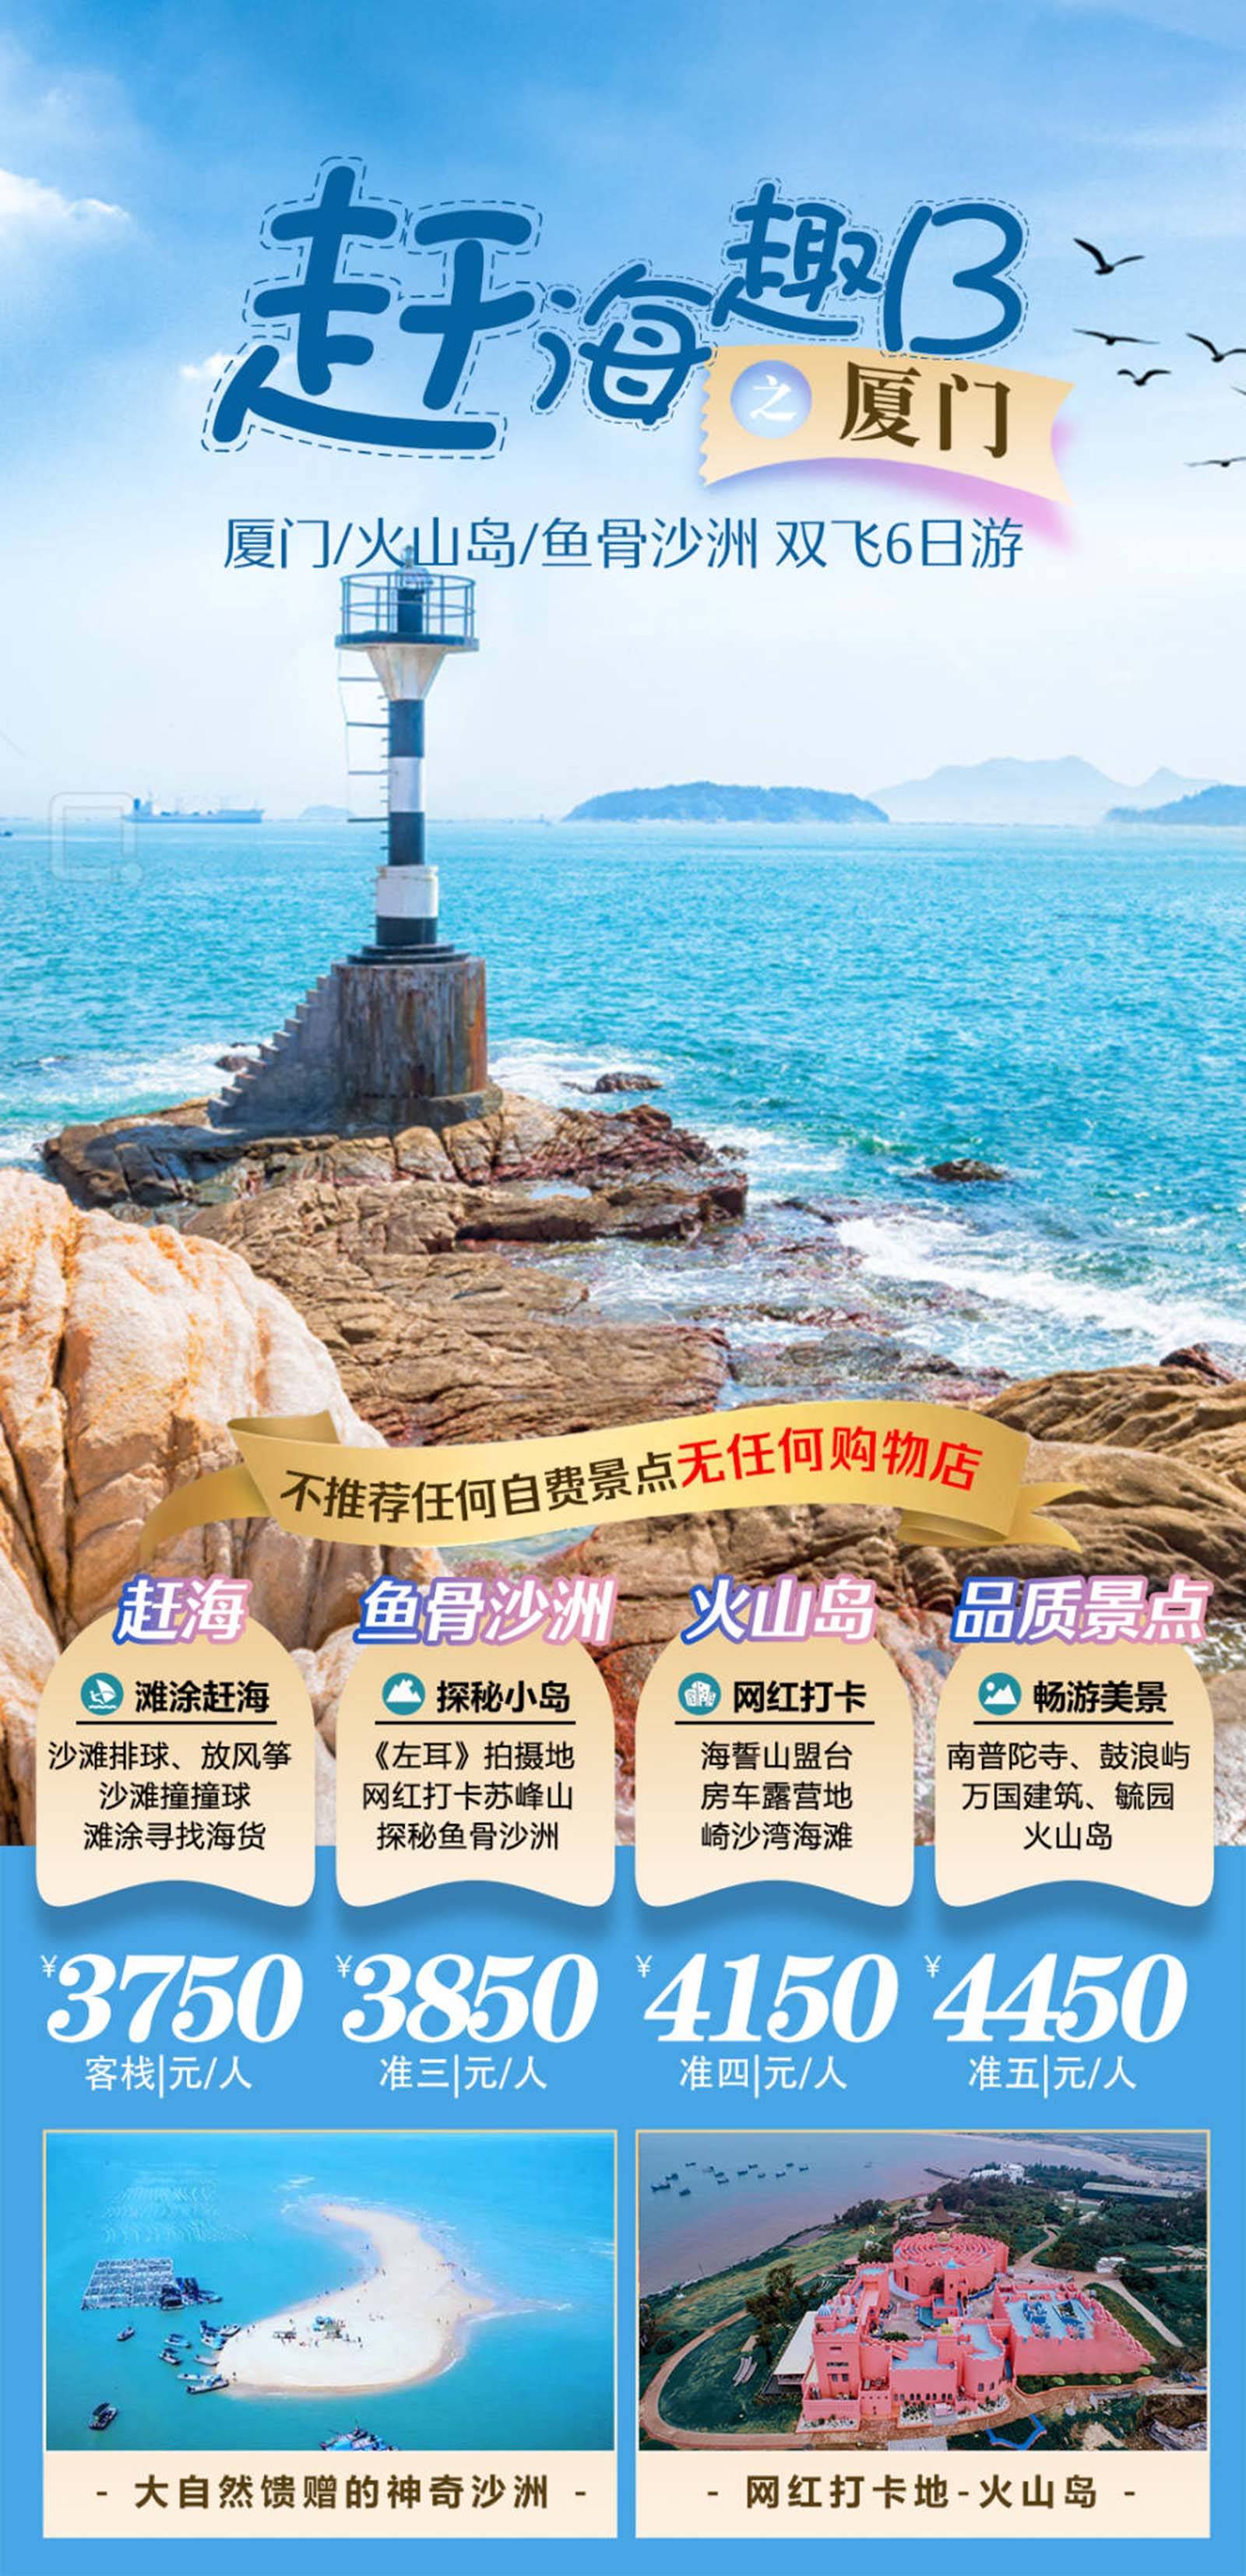 云南休闲旅游品牌宣传系列海报-第2张